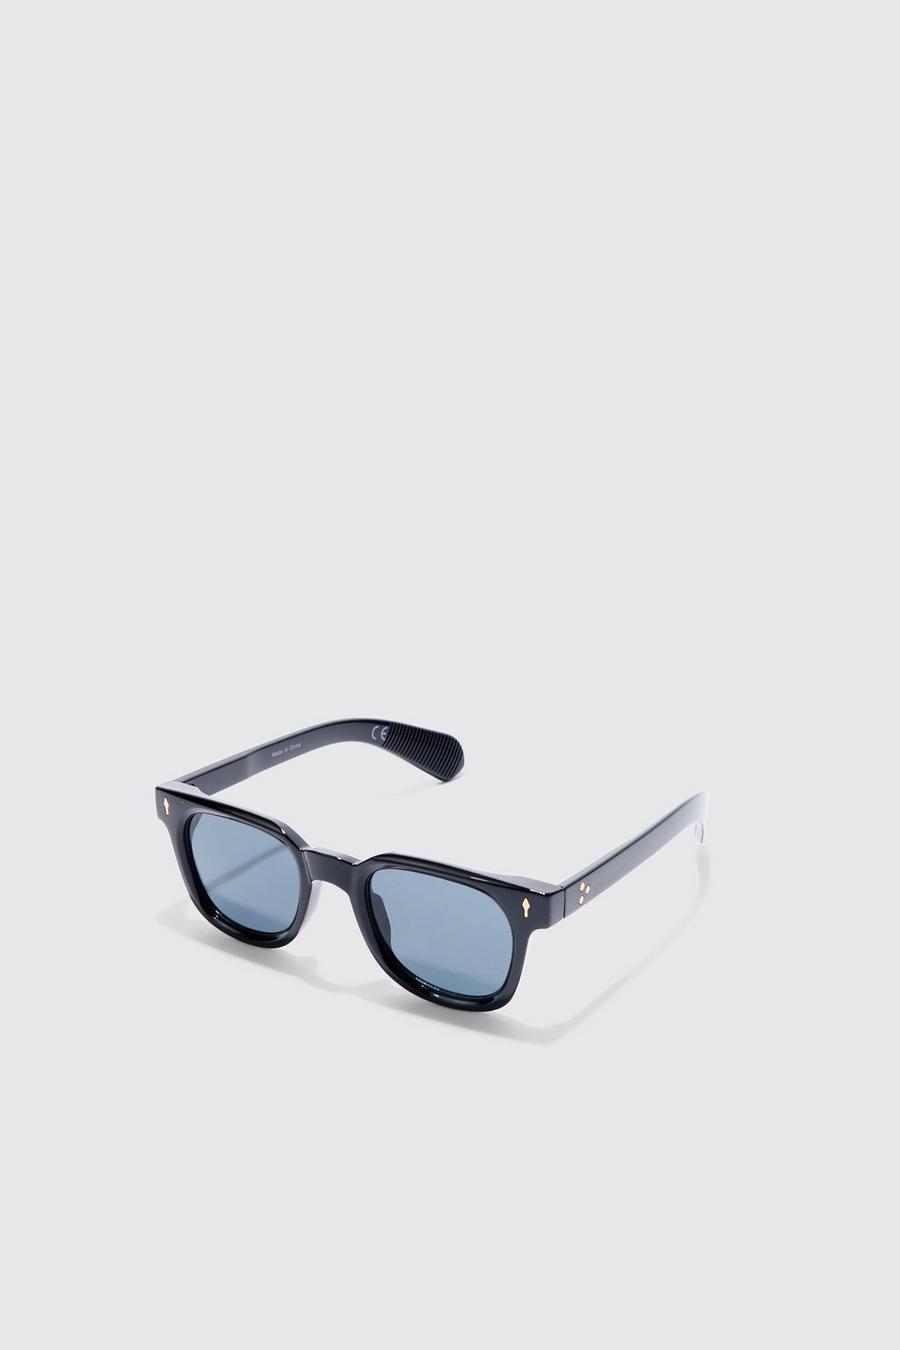 Black Retro Plastic Sunglasses